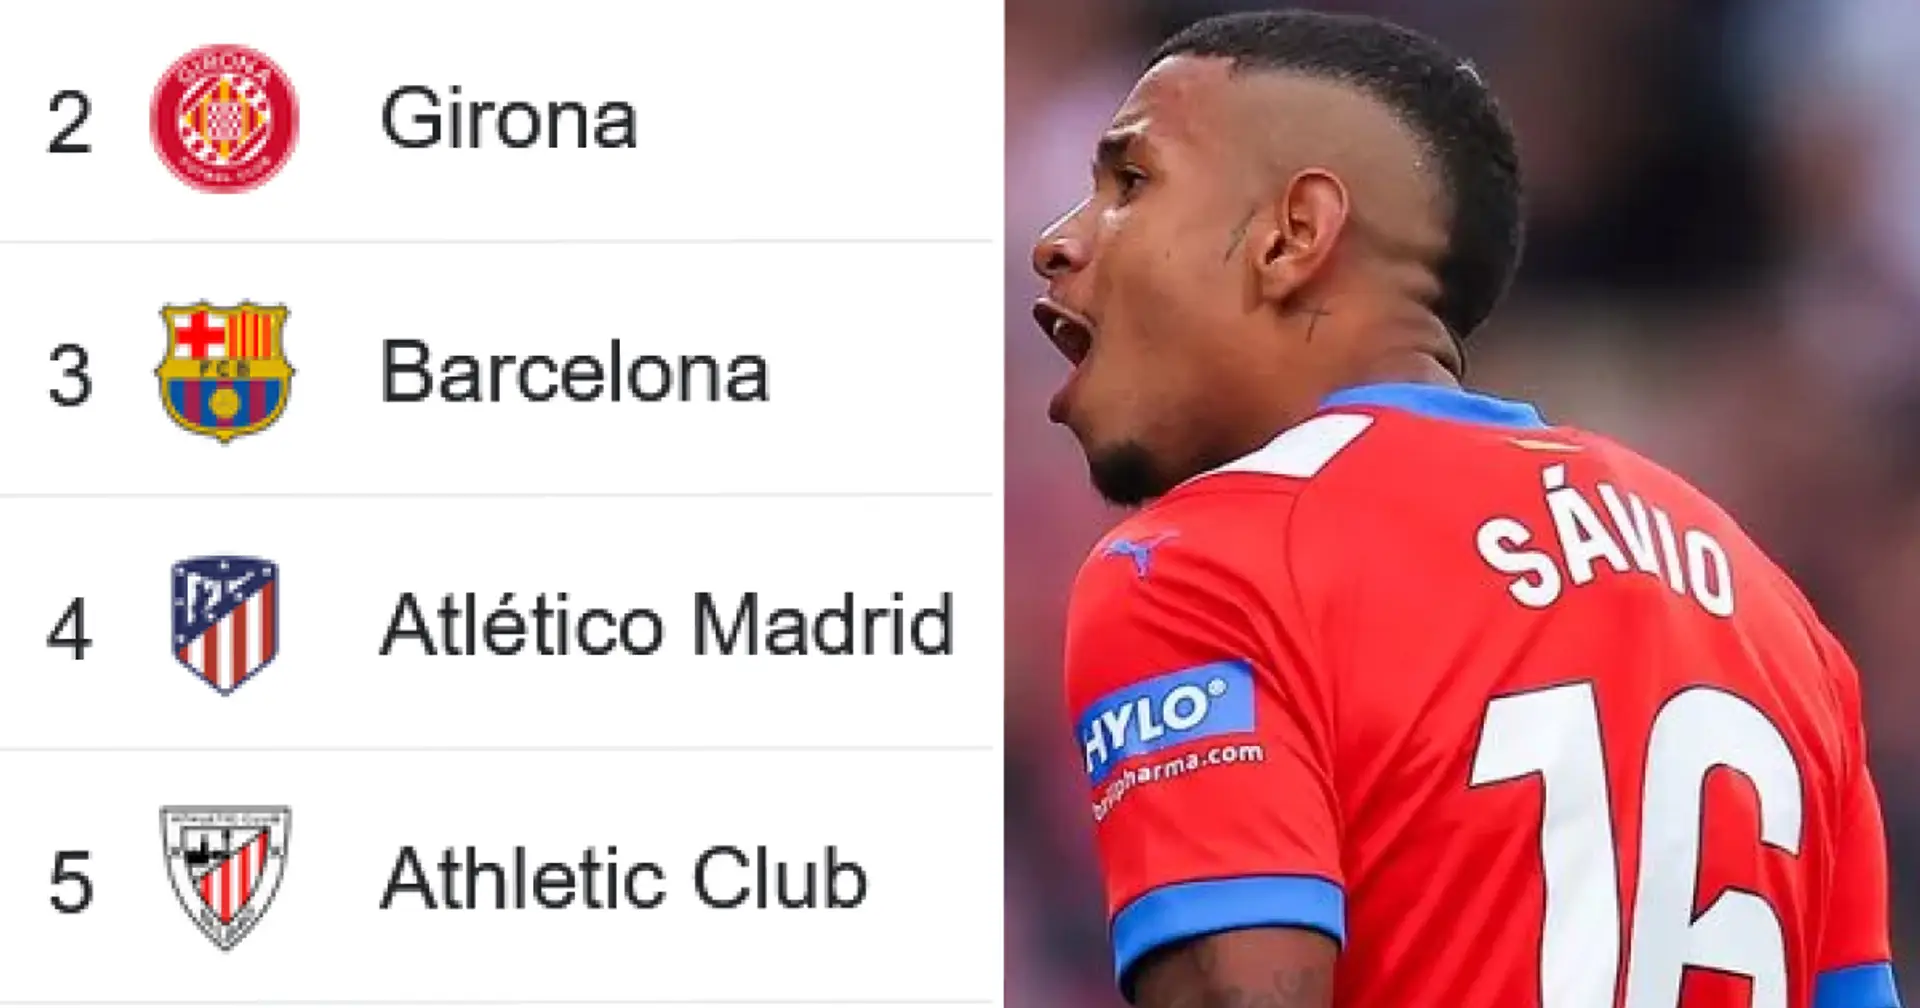 Girona overtake Barca: Updated La Liga standings after 26 games